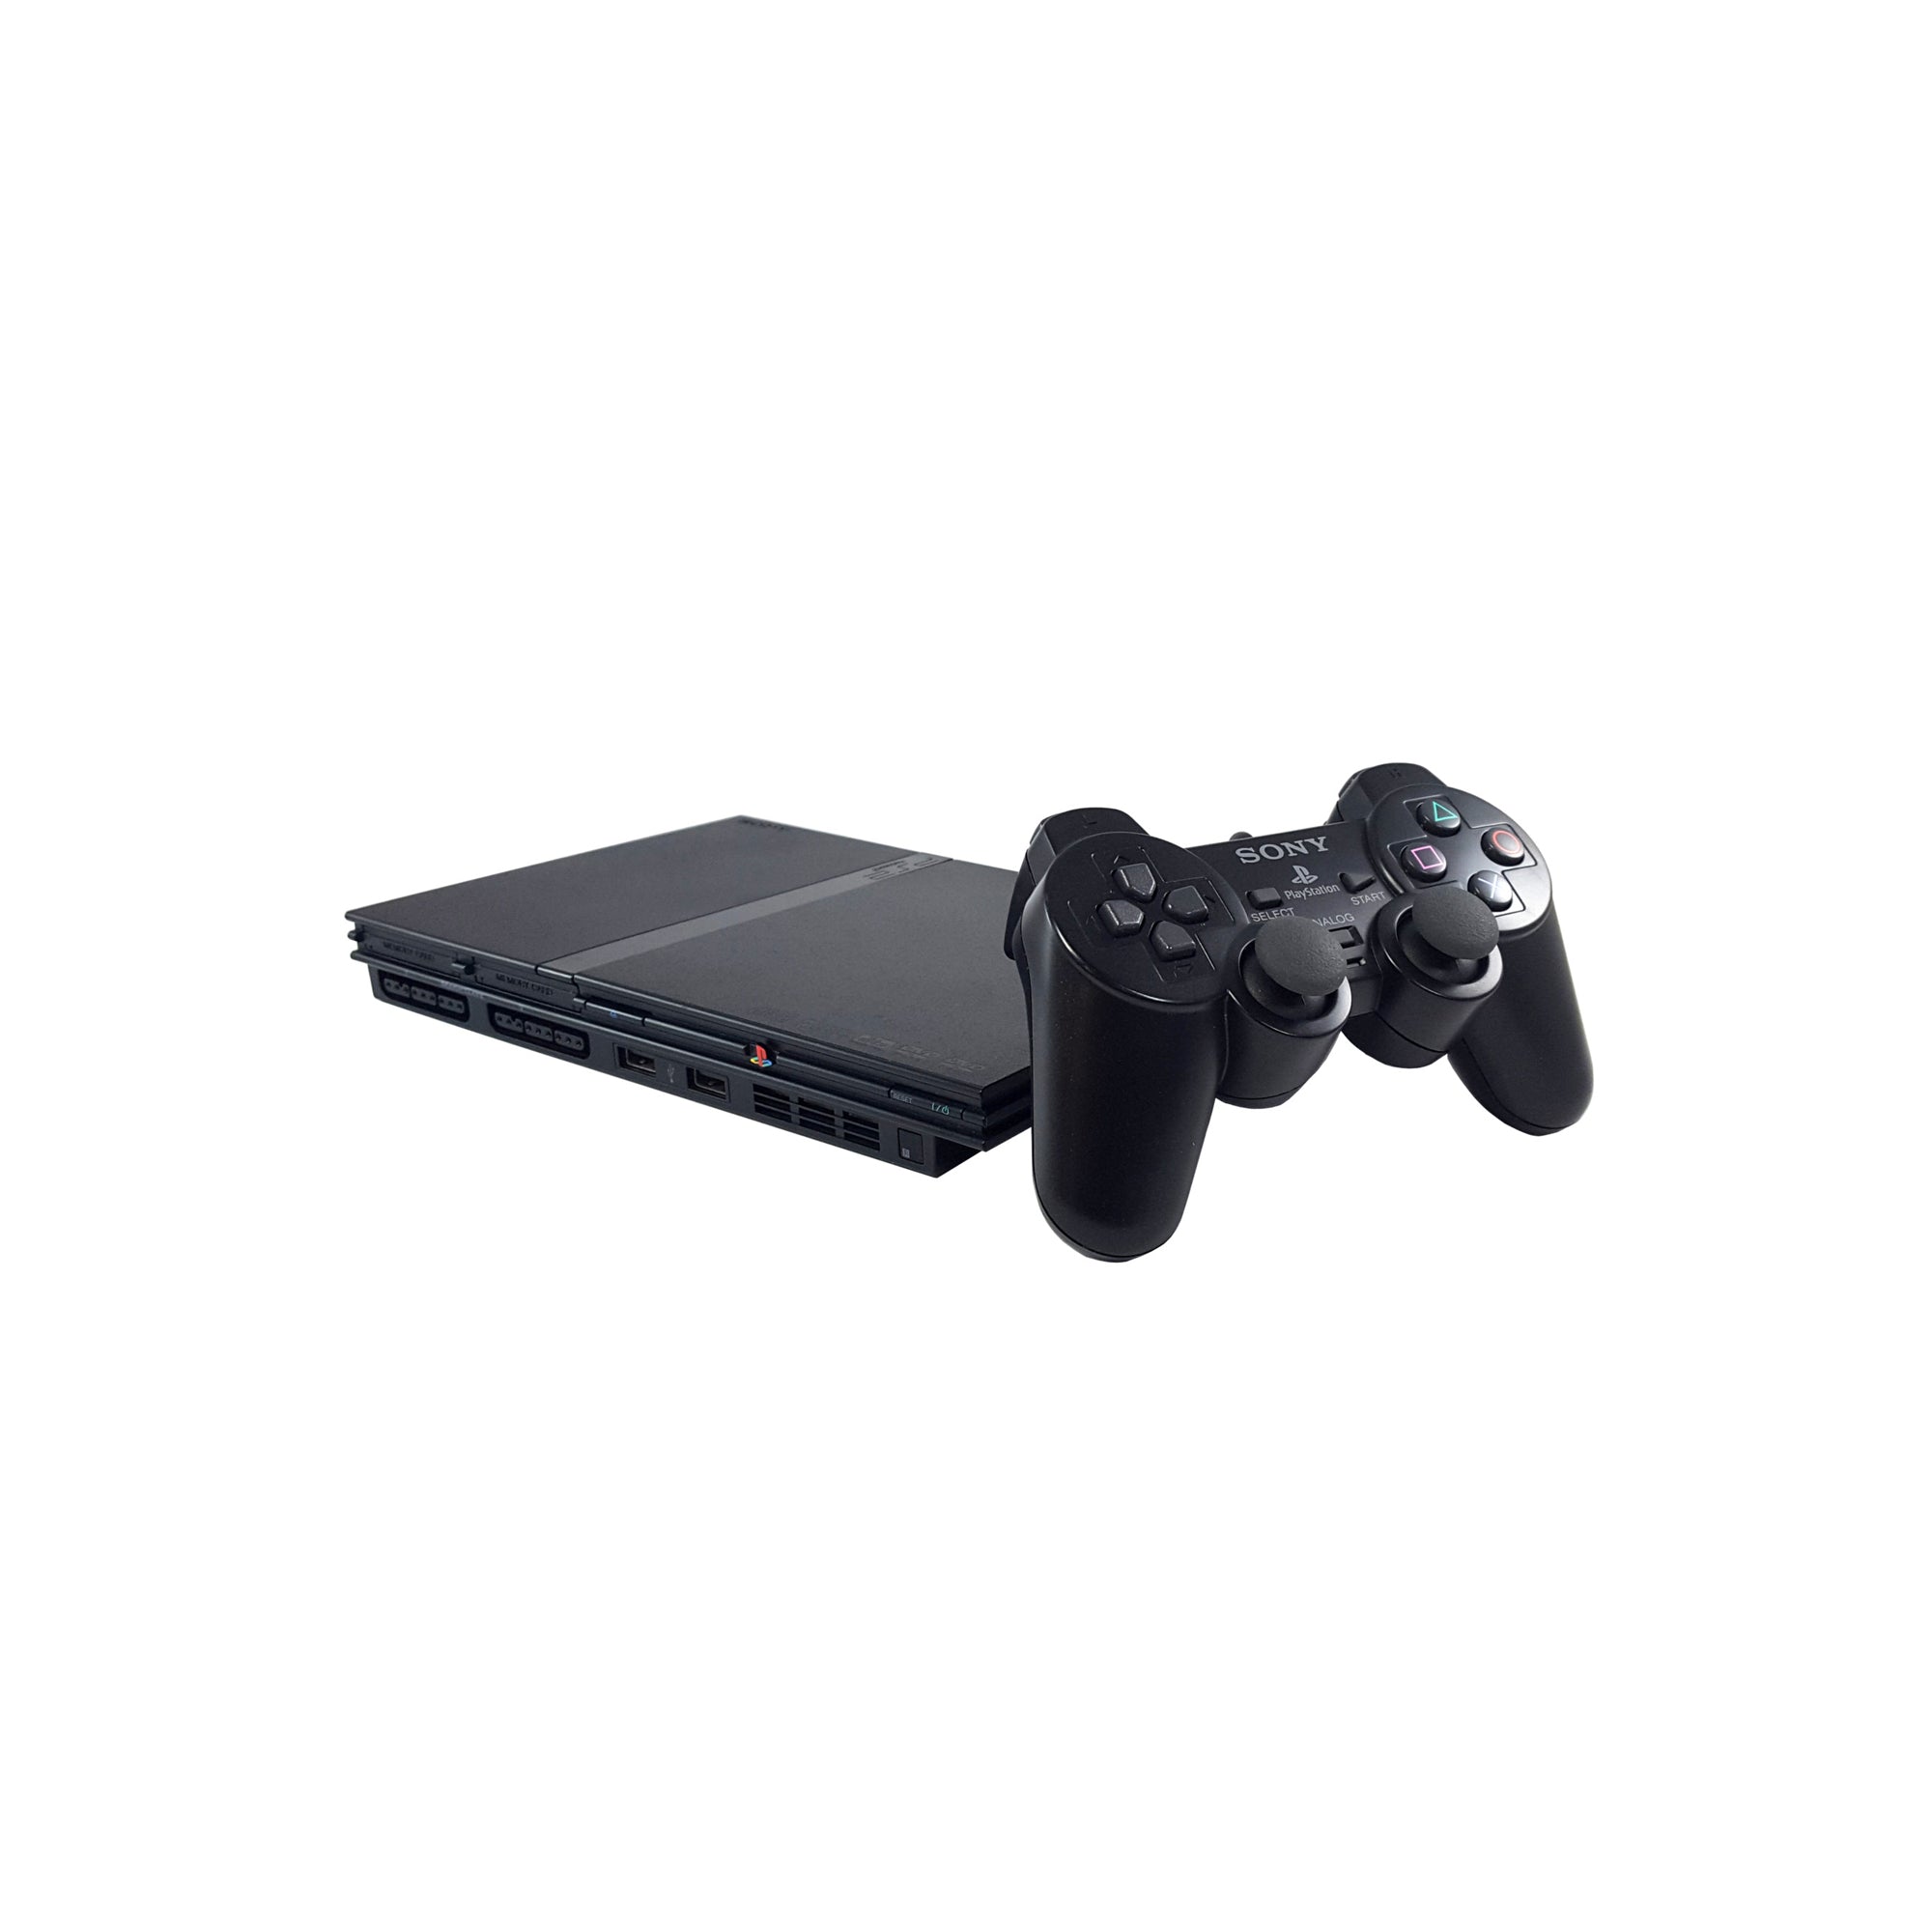 Sony PlayStation 2 Slim Console - Black